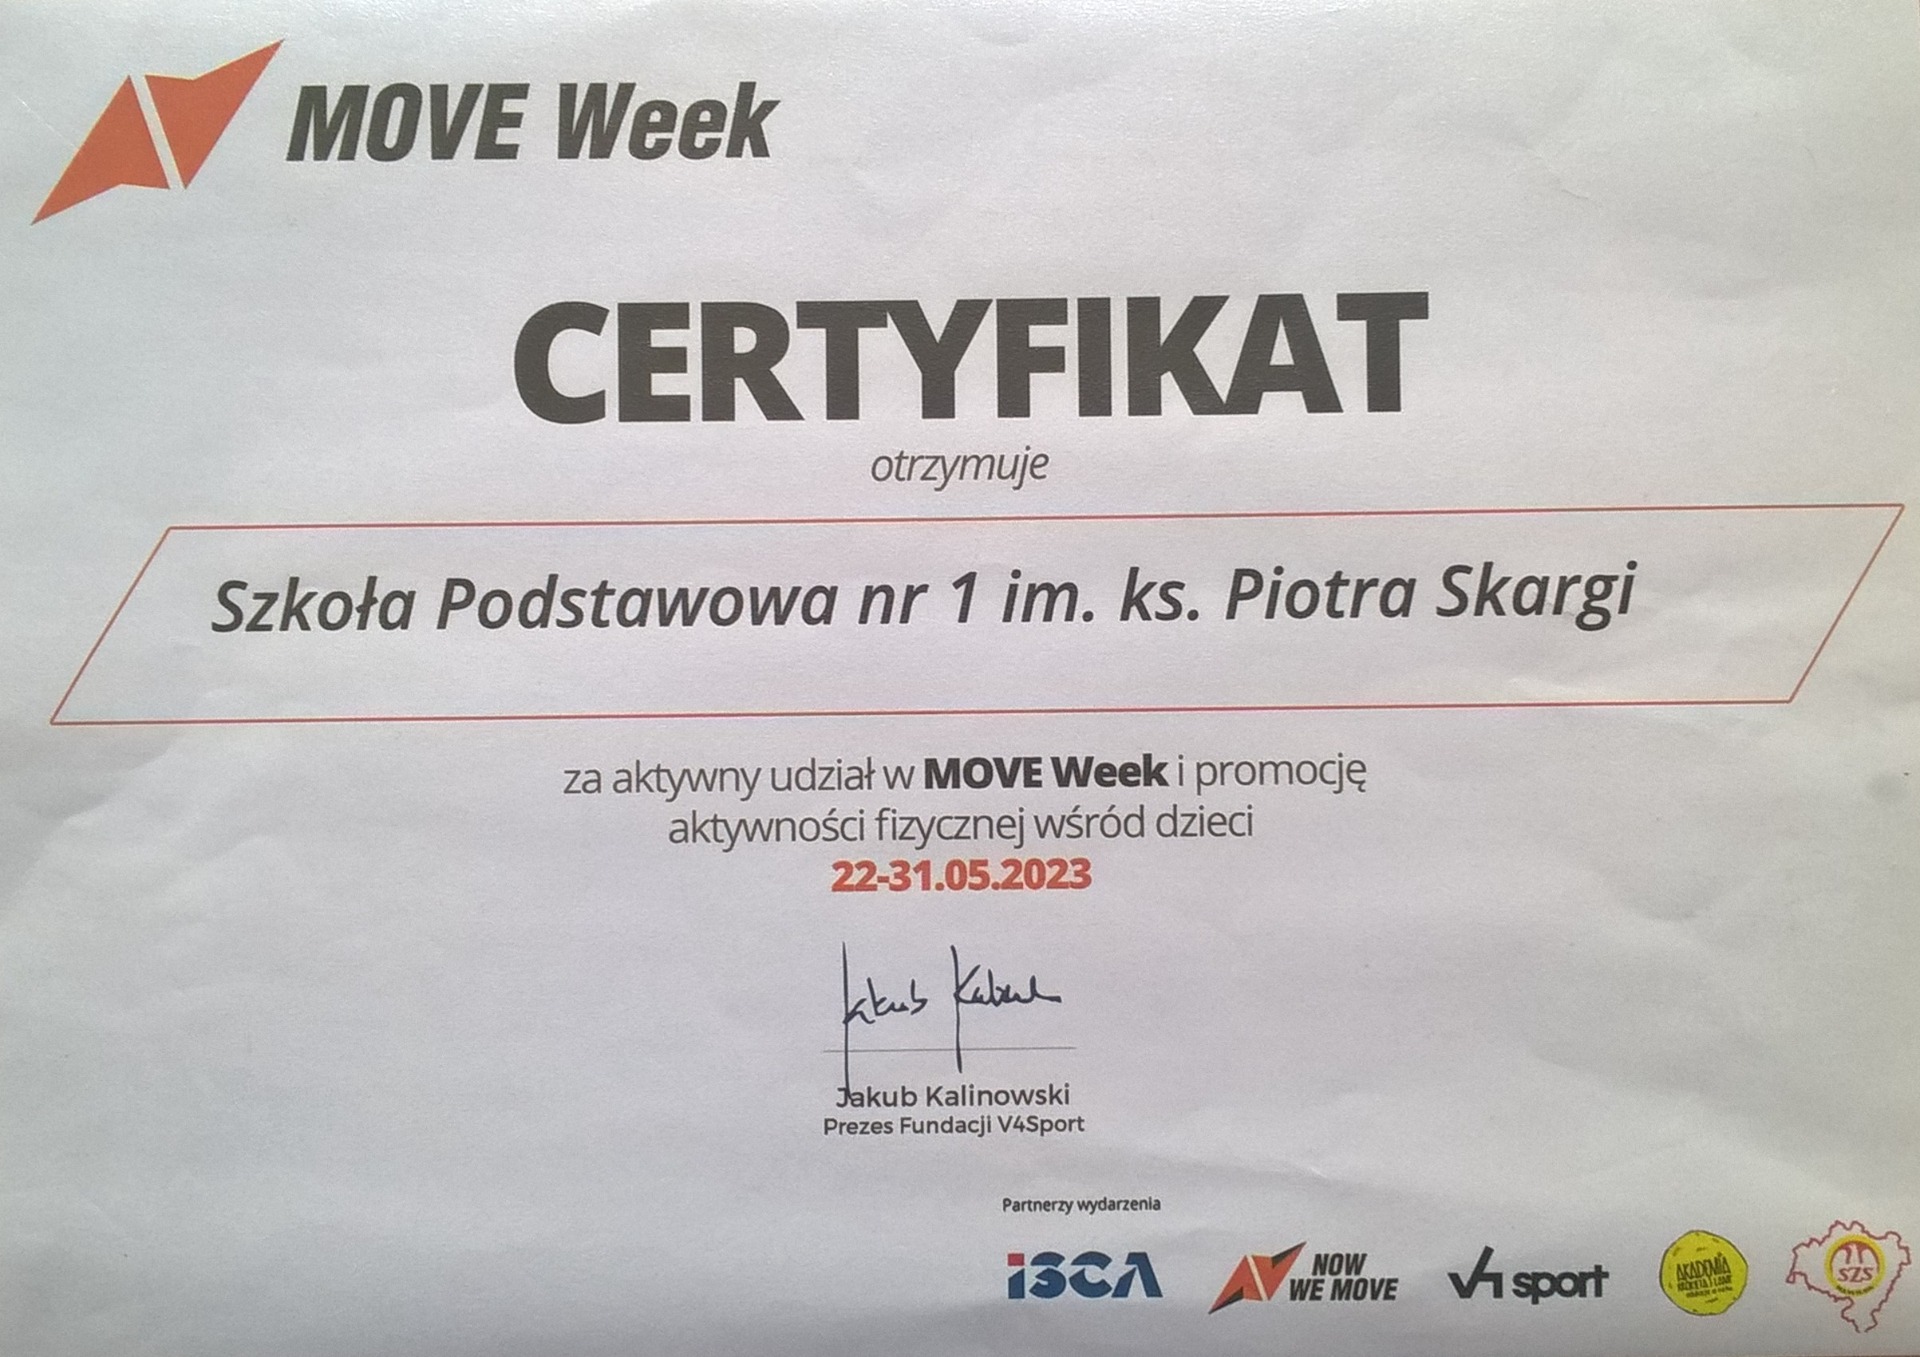 MOVE Week
CERTYFIKAT otrzymuje Szkoła Podstawowa nr 1 im. ks. Piotra Skargi za aktywny udział w MOVE Week i promocję aktywności fizycznej wśród dzieci 22-31.05.2023
J. Kalinowski Prezes Fundacji V4Sport